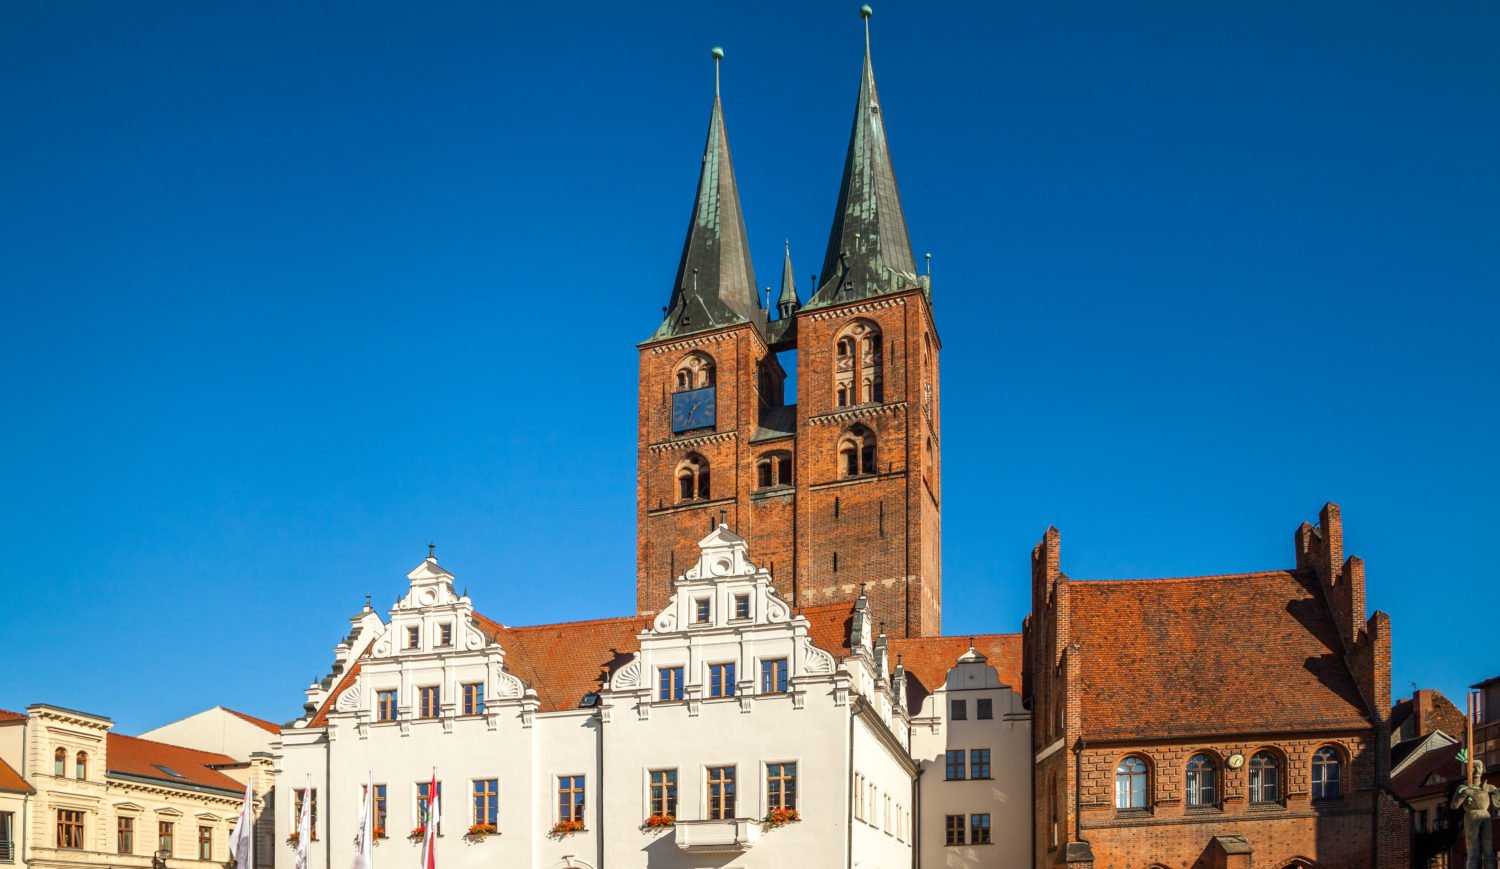 Das Stendaler Rathaus geht auf das 15. Jahrhundert zurück. Etwas noch älteres befindet sich in seinem Inneren: Die älteste Schnitzwand Deutschlands aus dem Jahr 1462